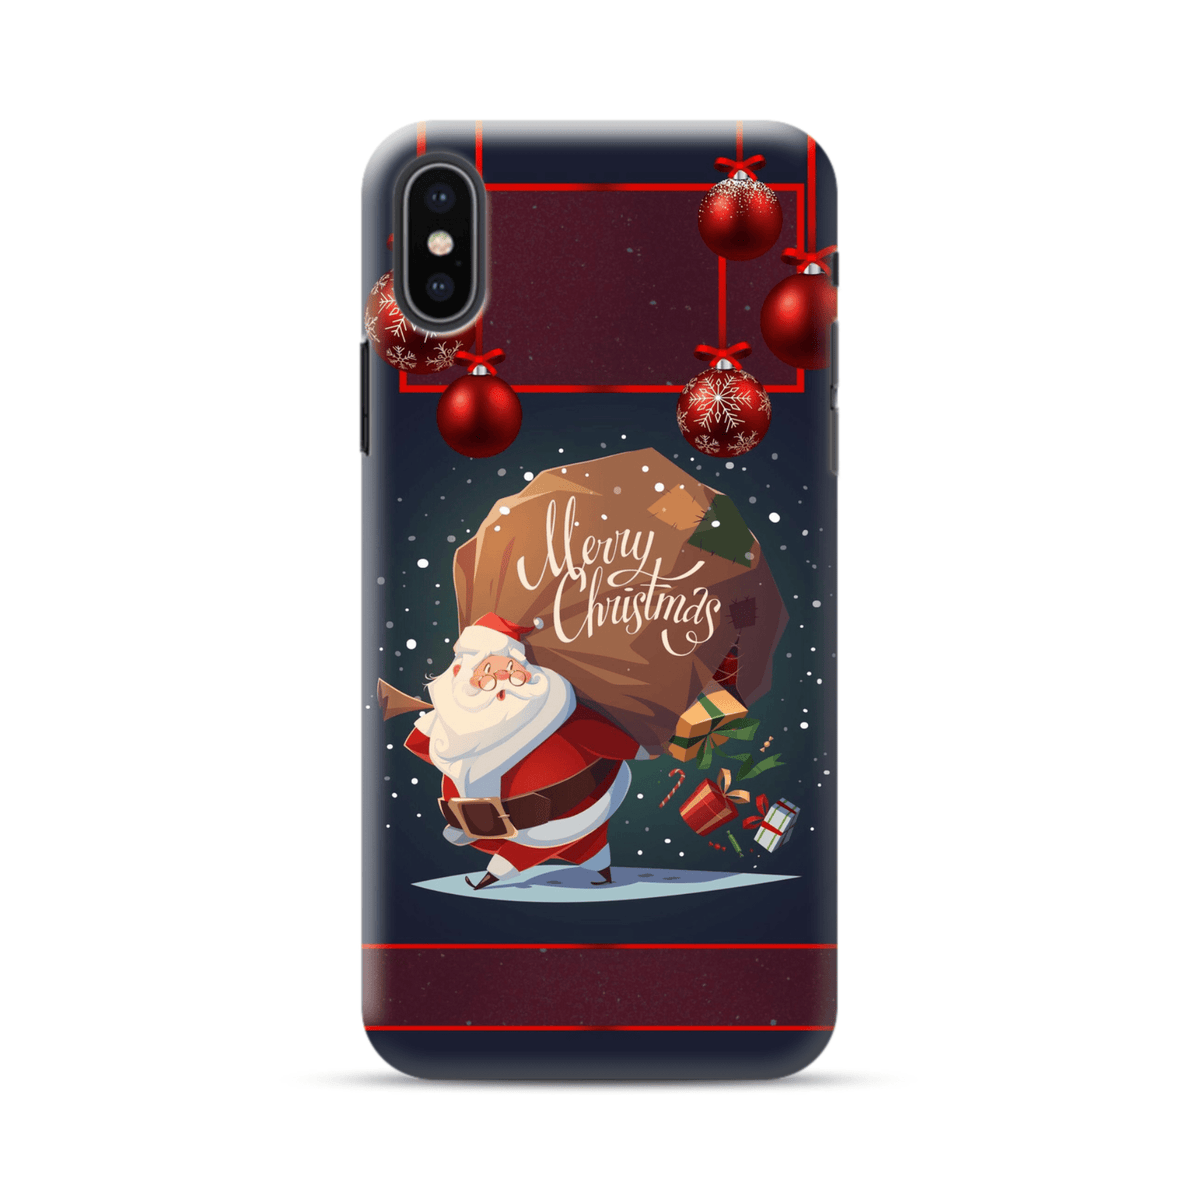 Santa’s gifts